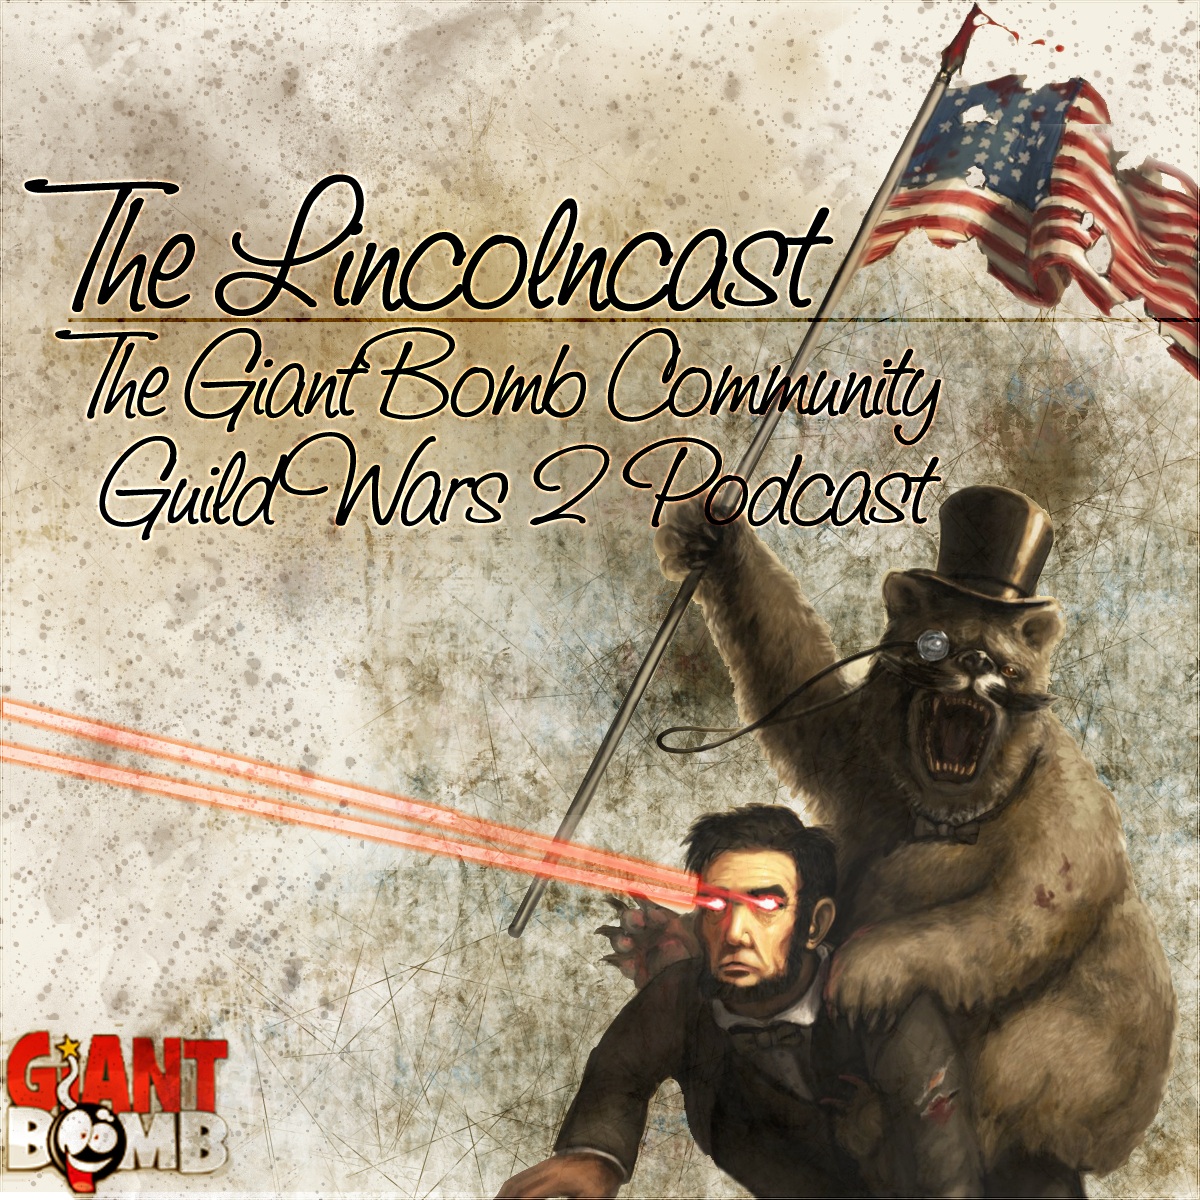 The Lincolncast Episode 62 - Blow’d Up